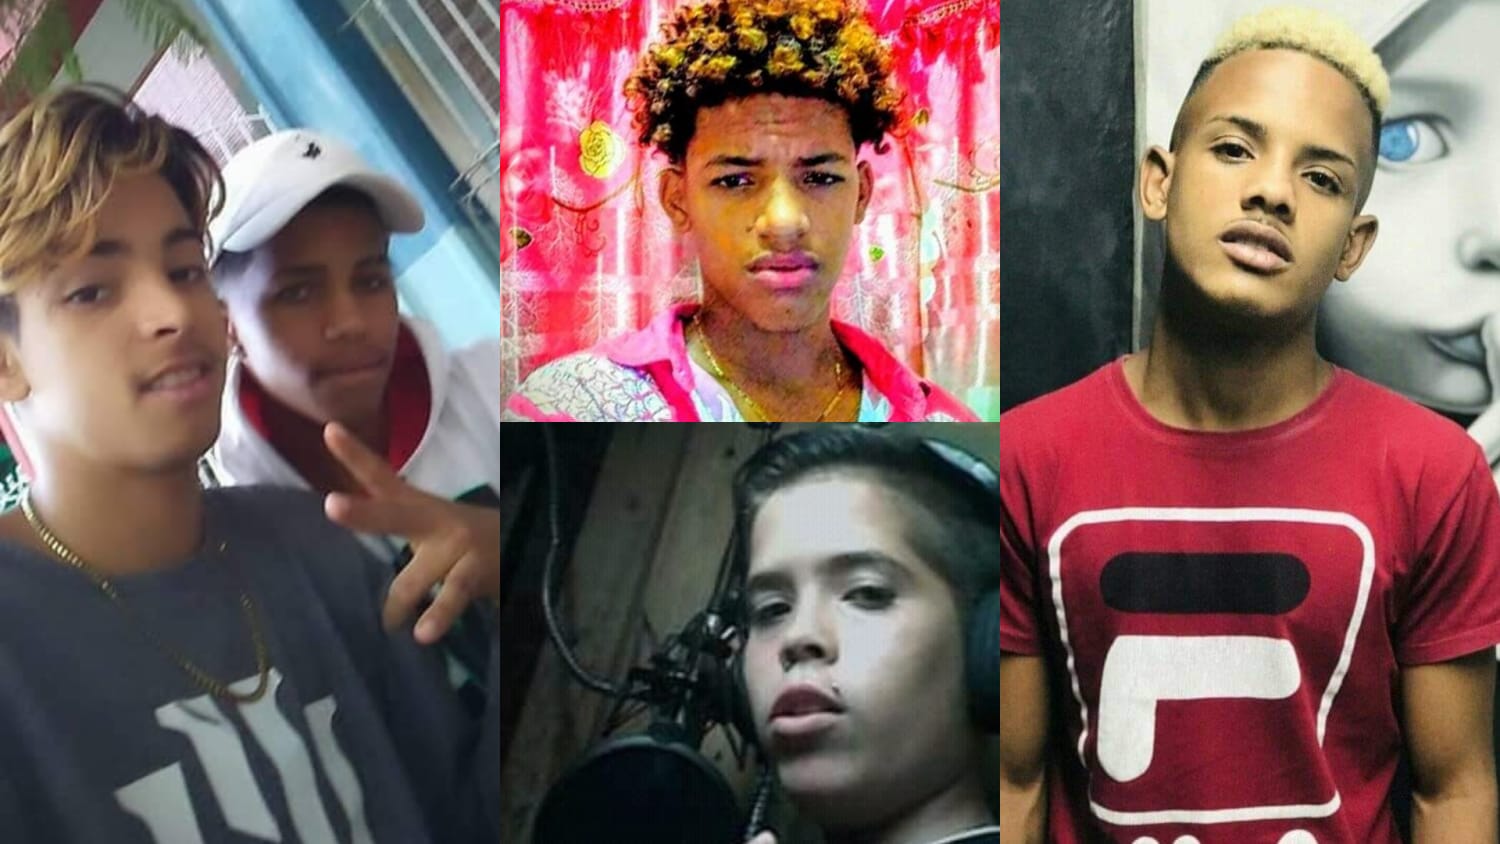 Me quitaron a mi hijo y me quitaron el miedo": Cuba mantiene presos a 14 menores por protestar contra el régimen